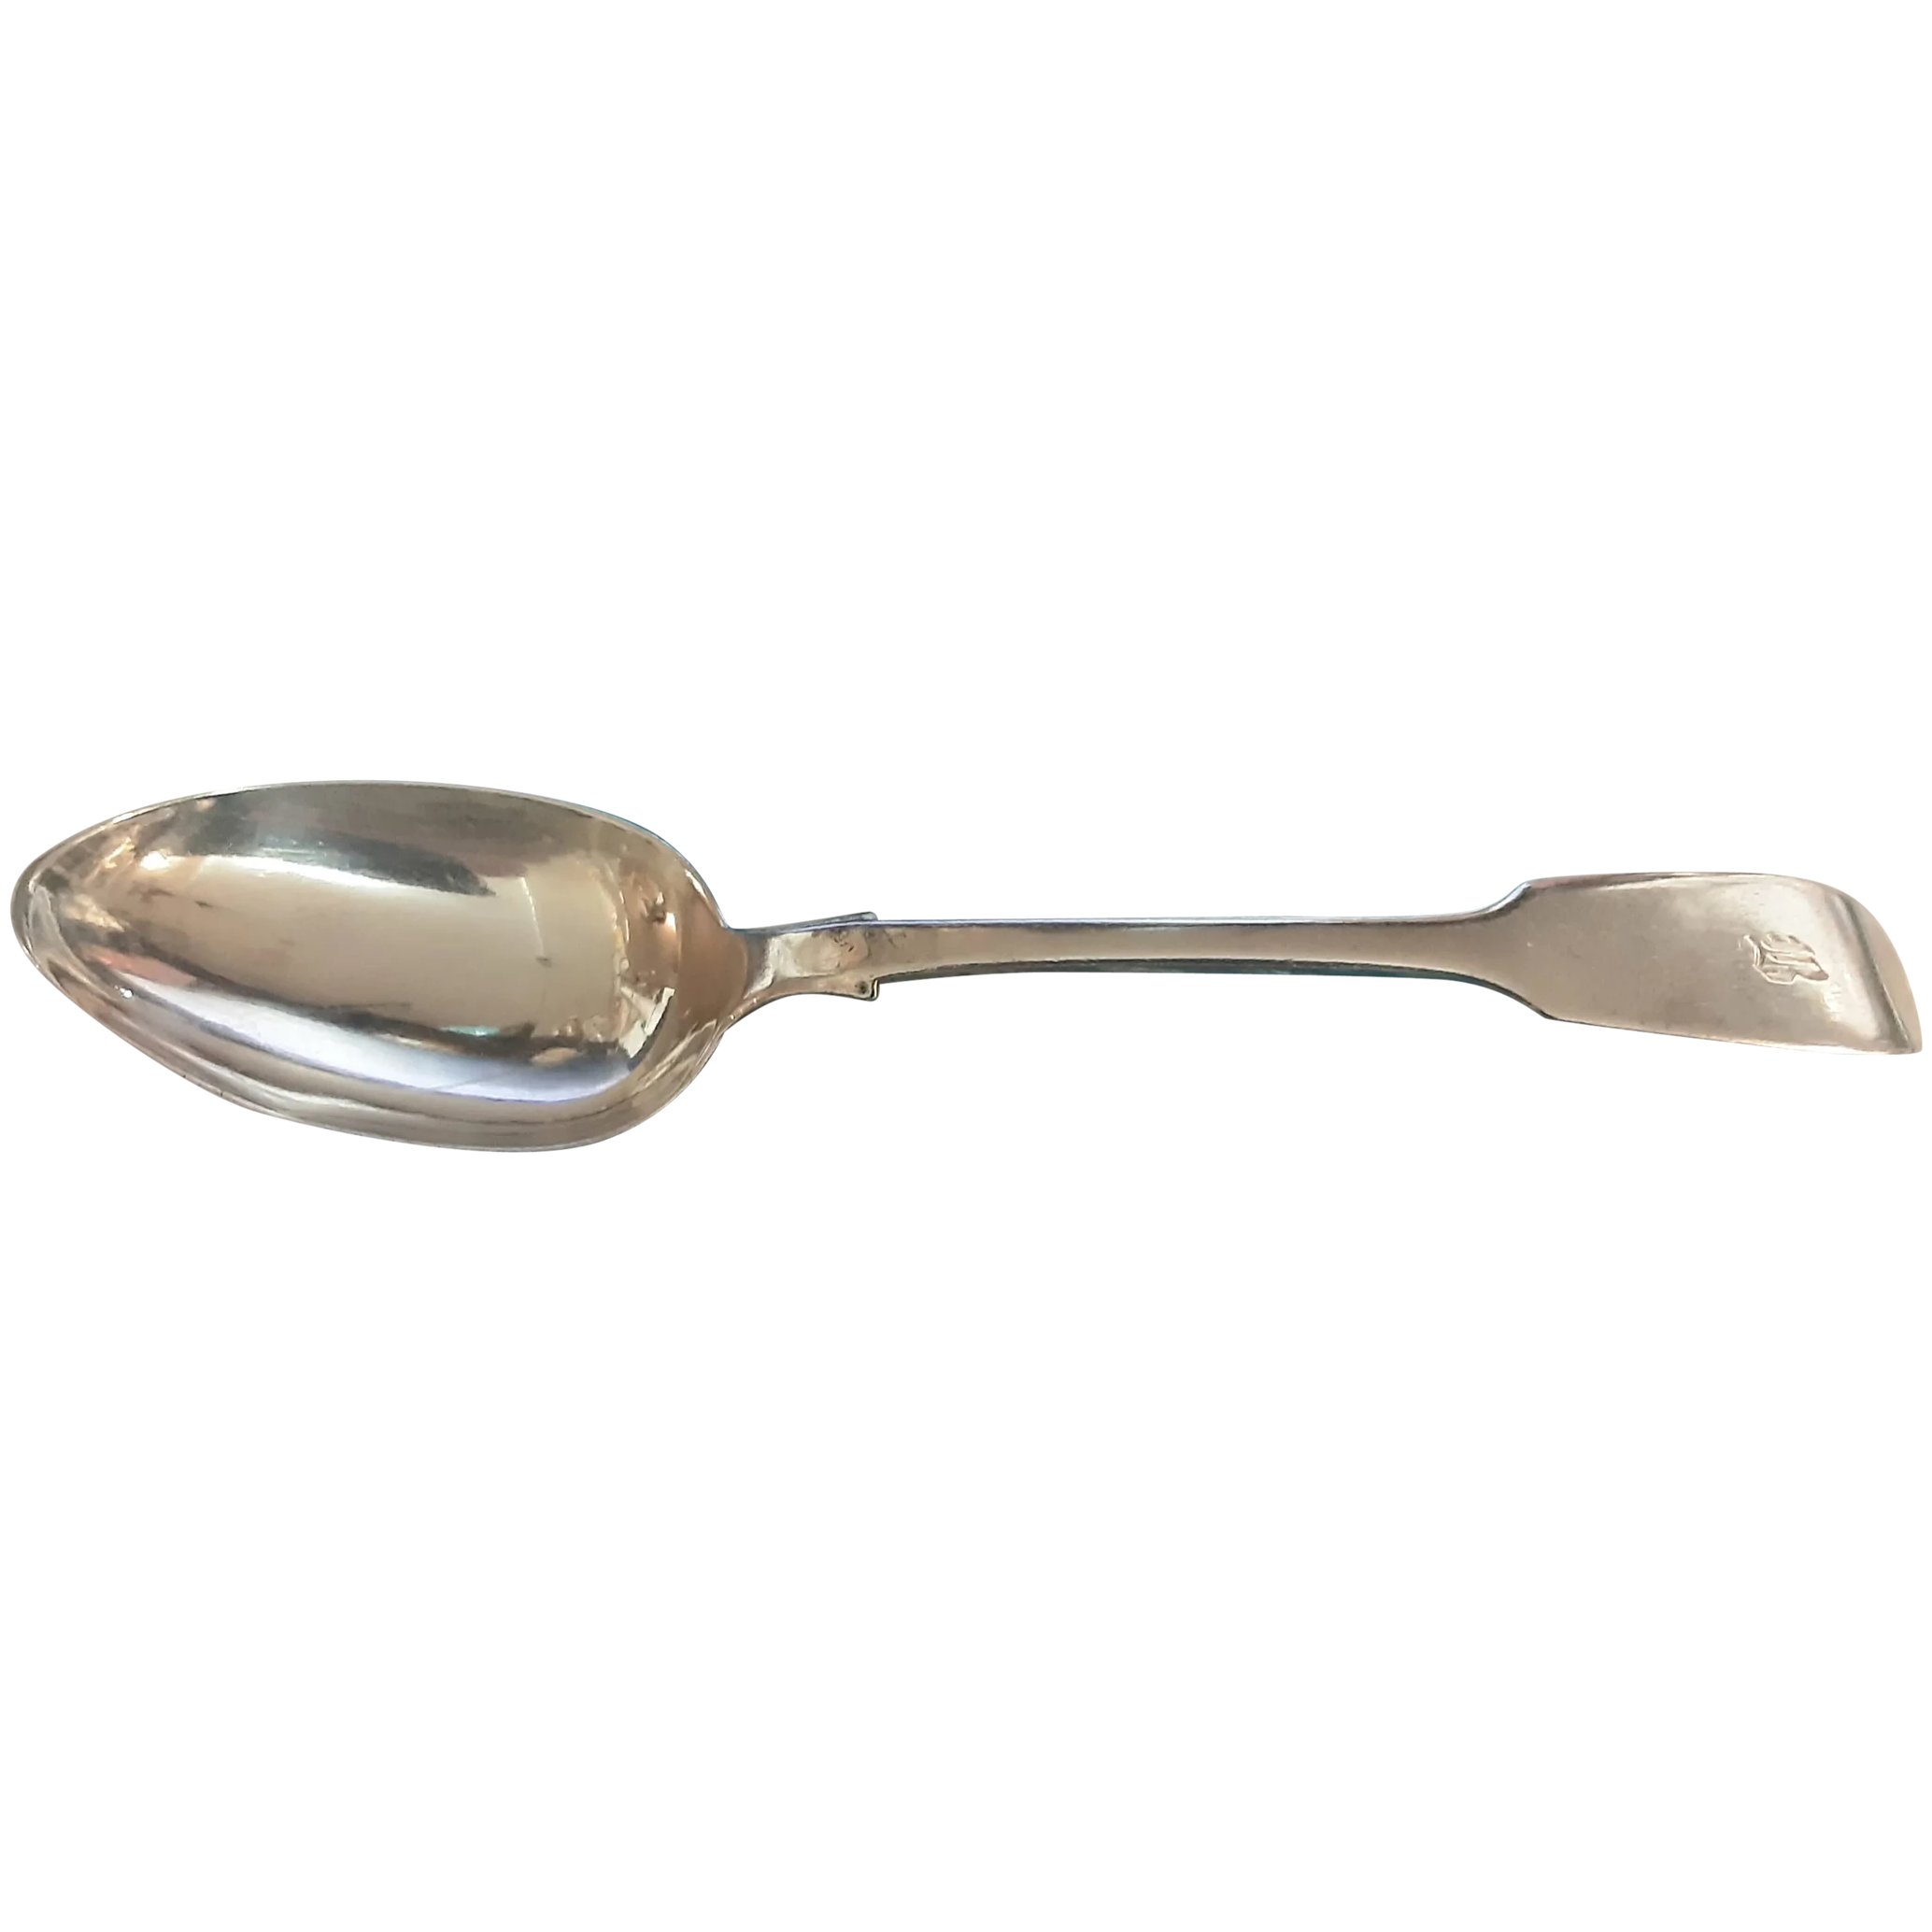 George II Sterling Silver Serving Spoon - 1756